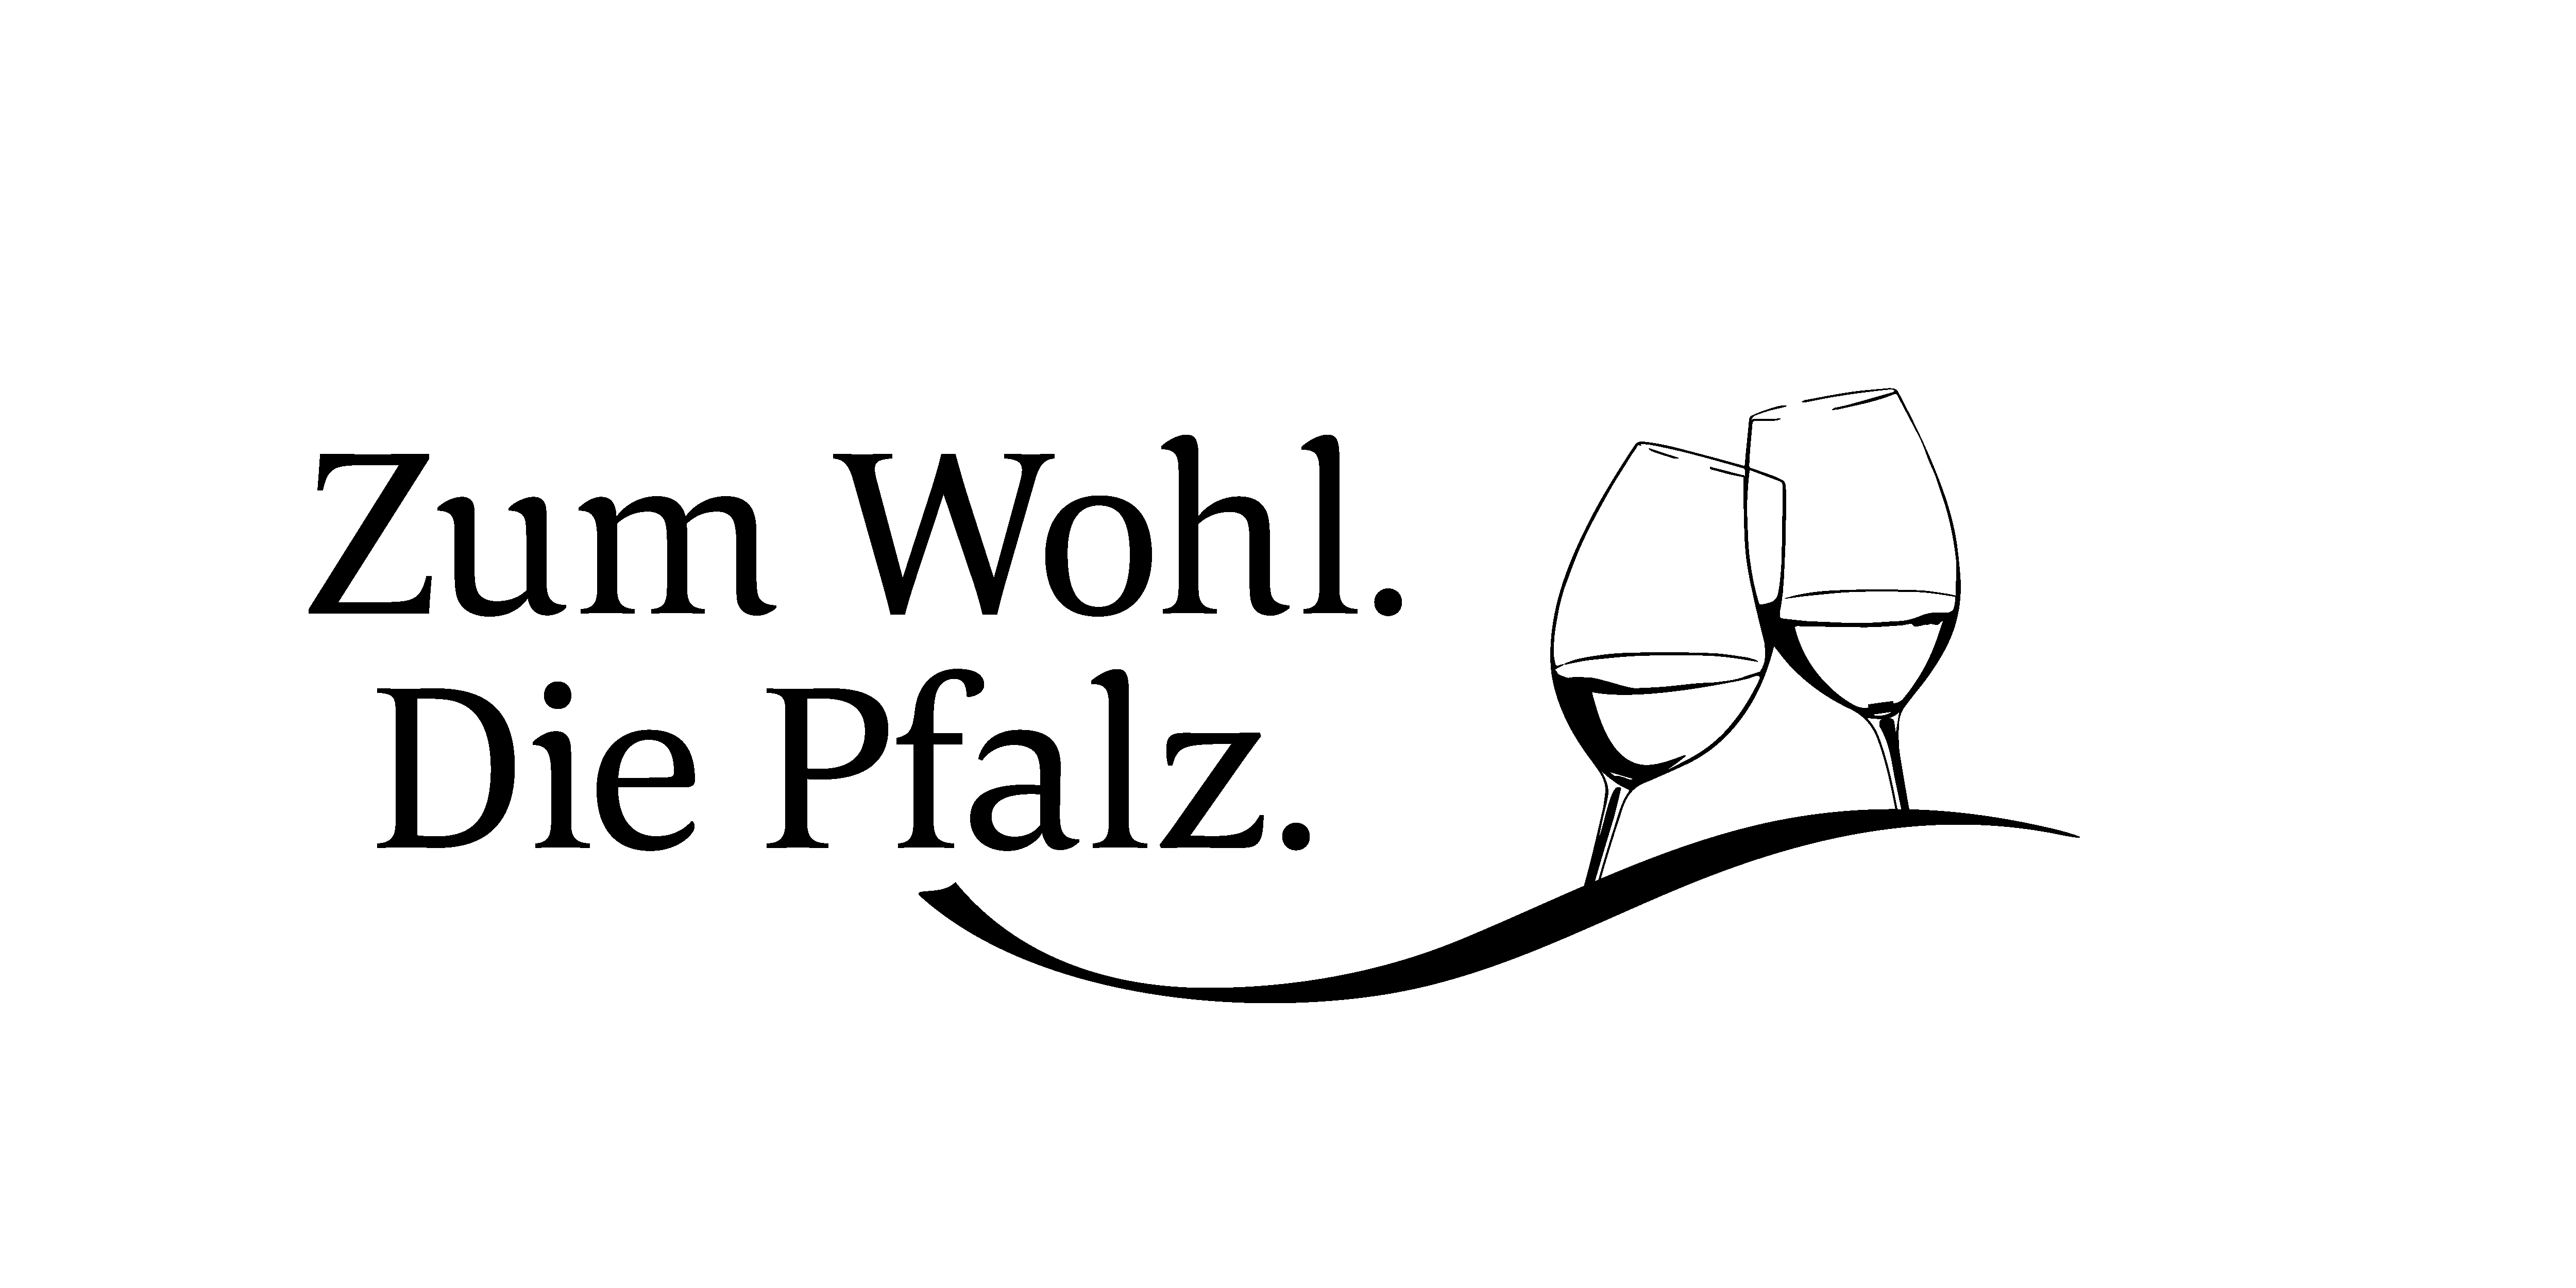 Zum Wohl. Die Pfalz.